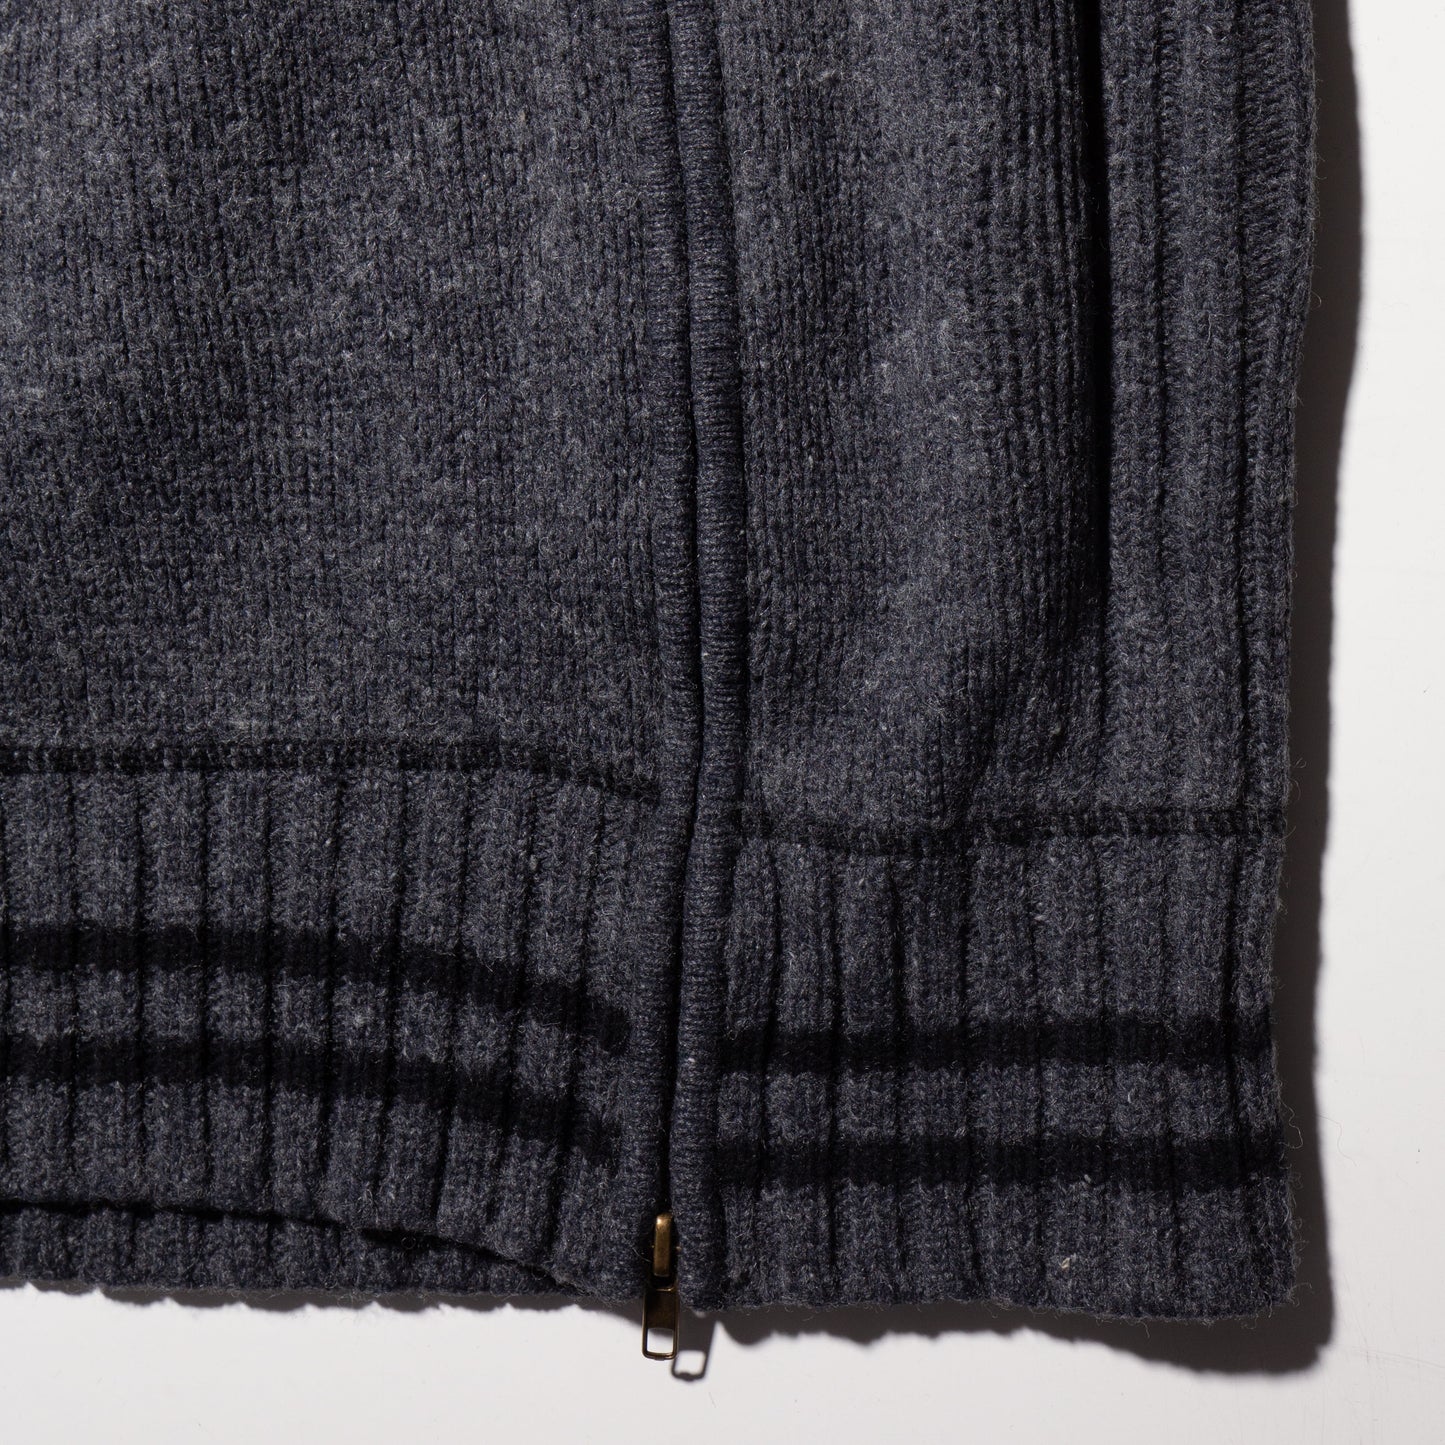 vintage slanting zip knit hoodie